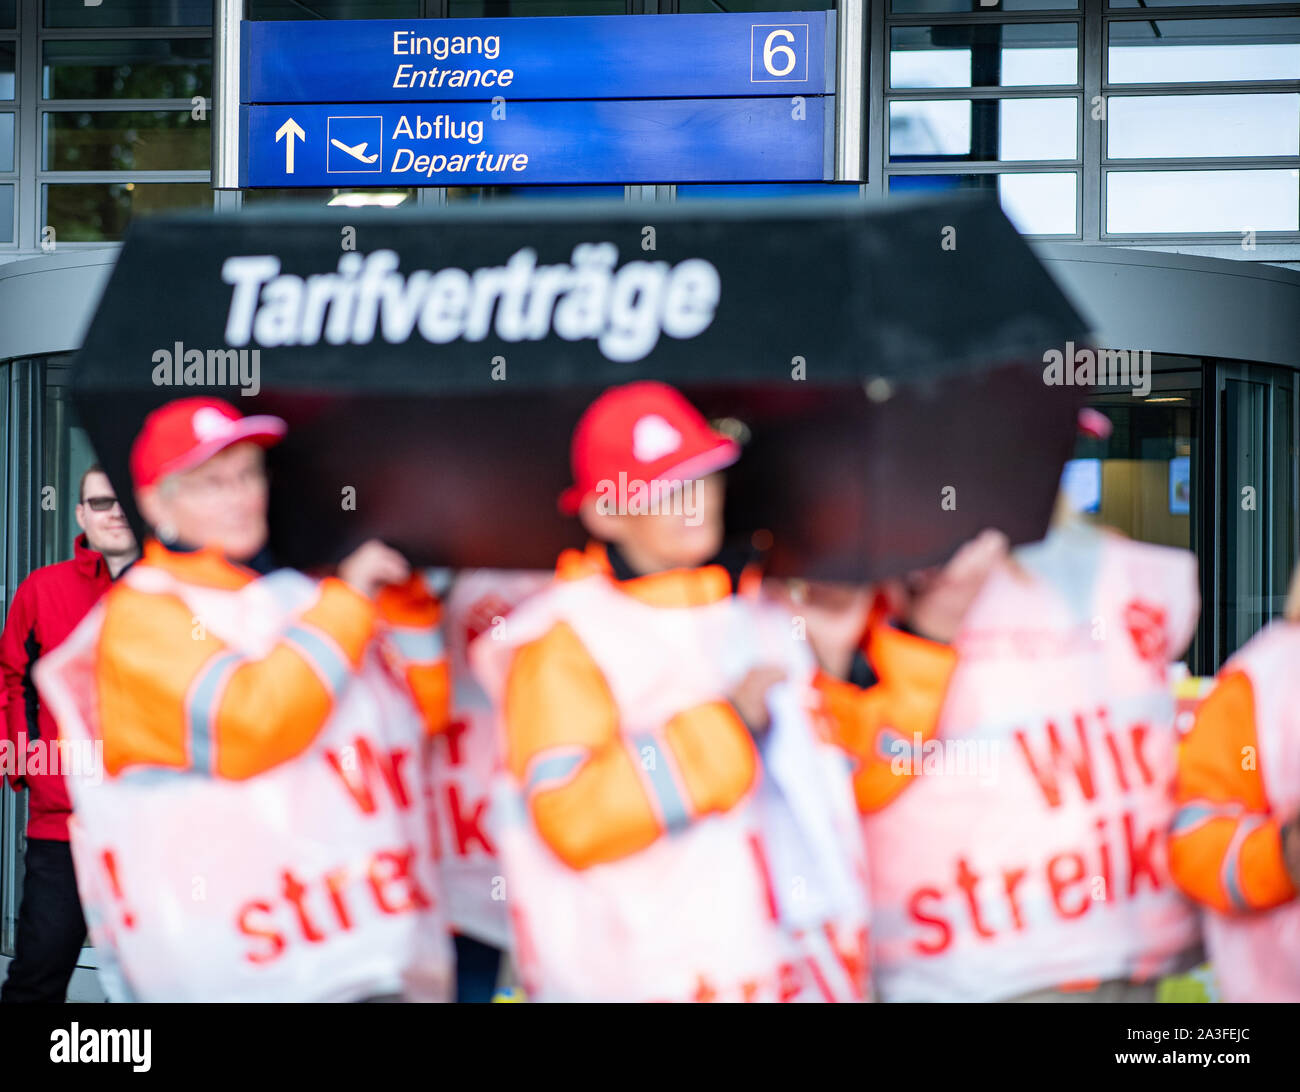 08 de octubre de 2019, Renania del Norte-Westfalia, Greven: Los empleados de las empresas de limpieza están vistiendo chalecos de huelga y un ataúd con la inscripción: "Convenios Colectivos" en el aeropuerto de Münster Osnabrück. Los limpiadores inició una huelga de advertencia de 24 horas el martes con el cambio temprano a las 6:00 a.m., esta fue la reacción de la Unión a las estancadas negociaciones sobre un marco acuerdo salarial para la limpieza comercial, un portavoz para el IB BAU dice. El tráfico aéreo se verá afectada porque no se permite a los aviones despegar sin limpieza. Se están realizando campañas paralelas en los aeropuertos de Francfort y Berlín-Tegel. Foto de stock